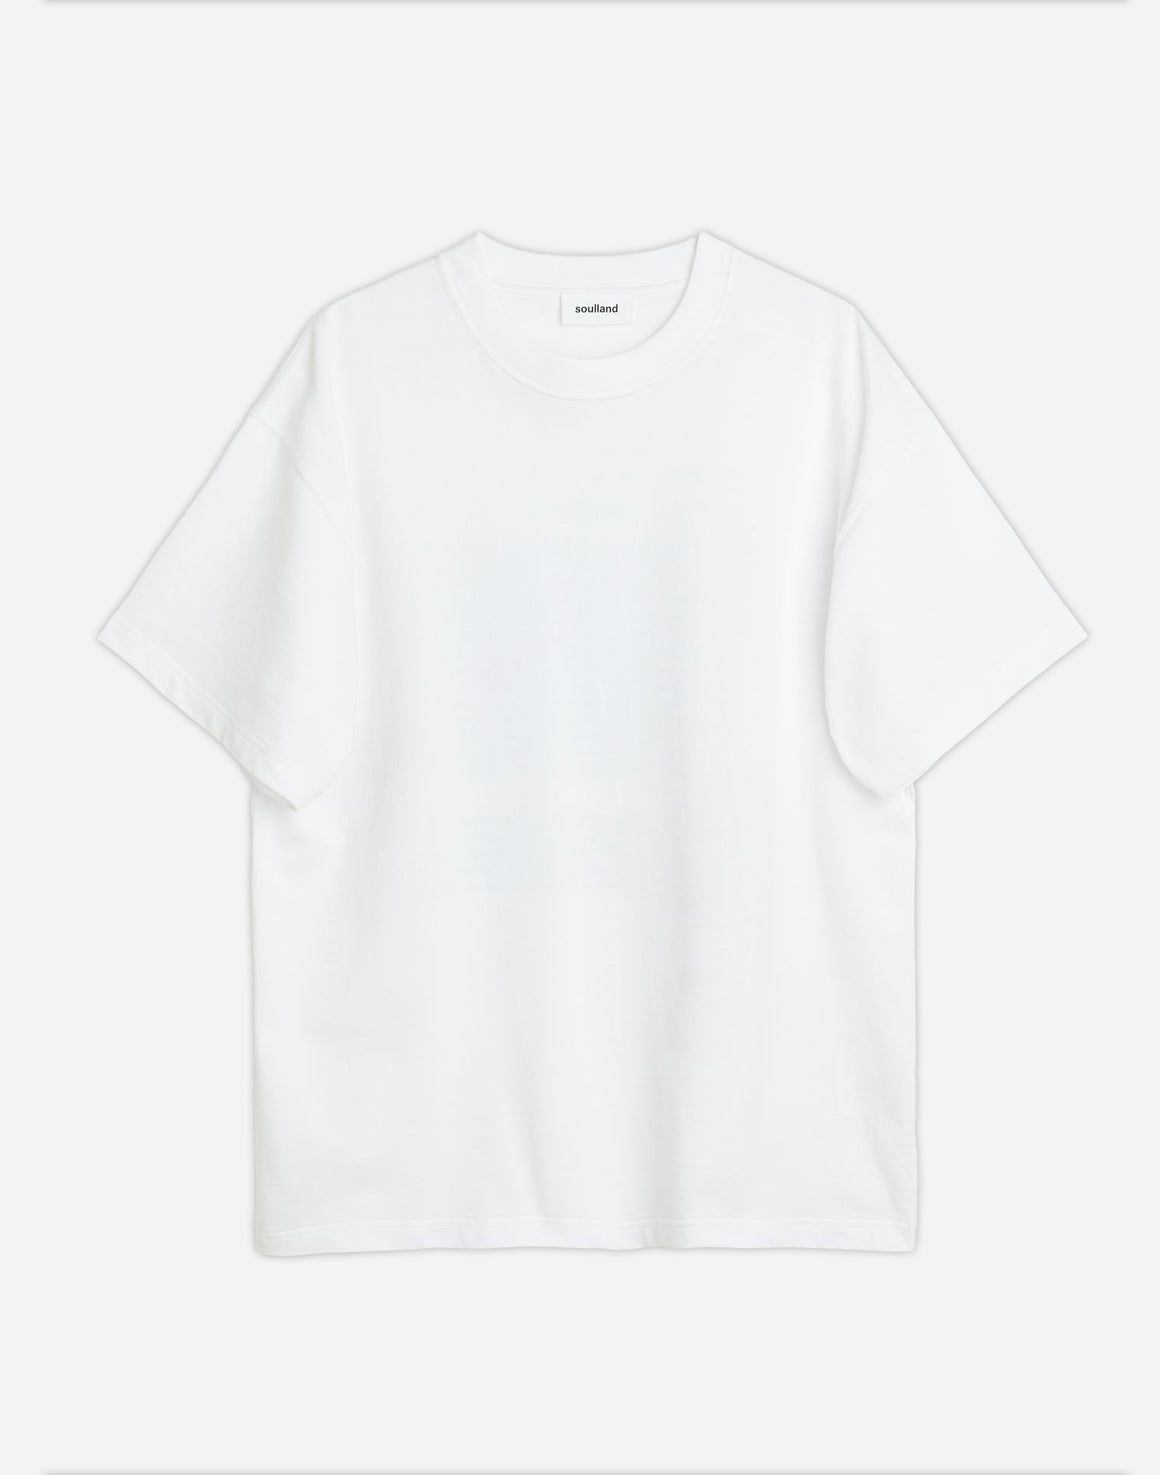 B.H.I 001 T-shirt - Hvid - soulland - Kul og Koks